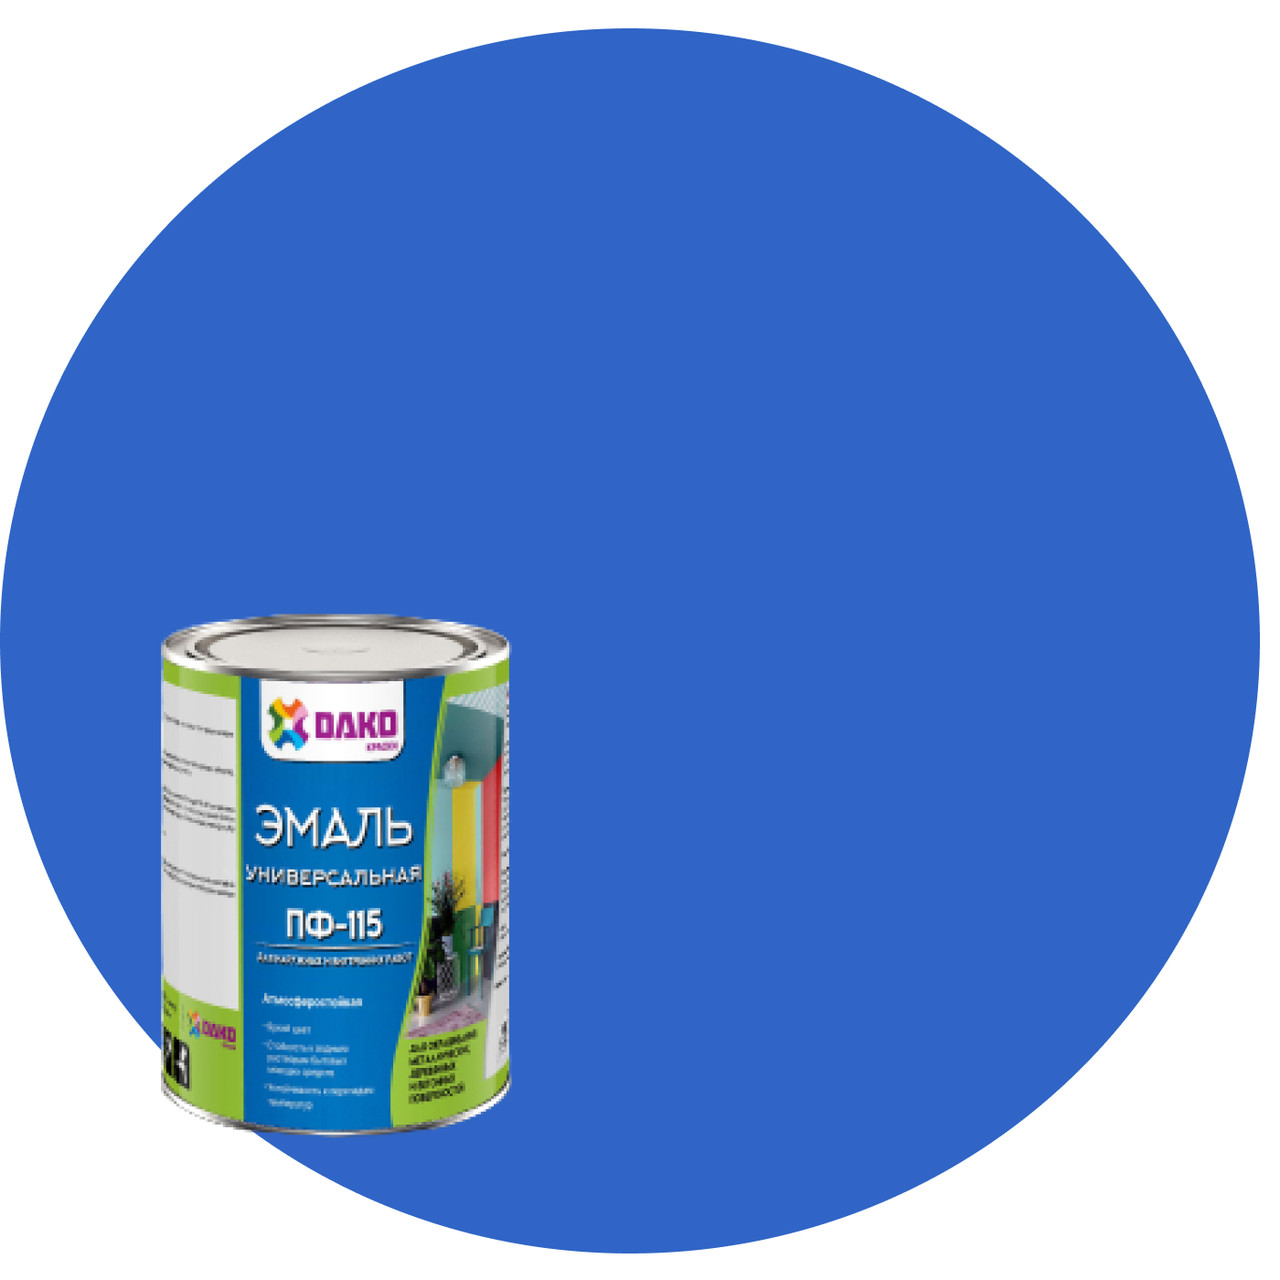 Универсальная эмаль ПФ-115 синий 2,6 кг Dako краски